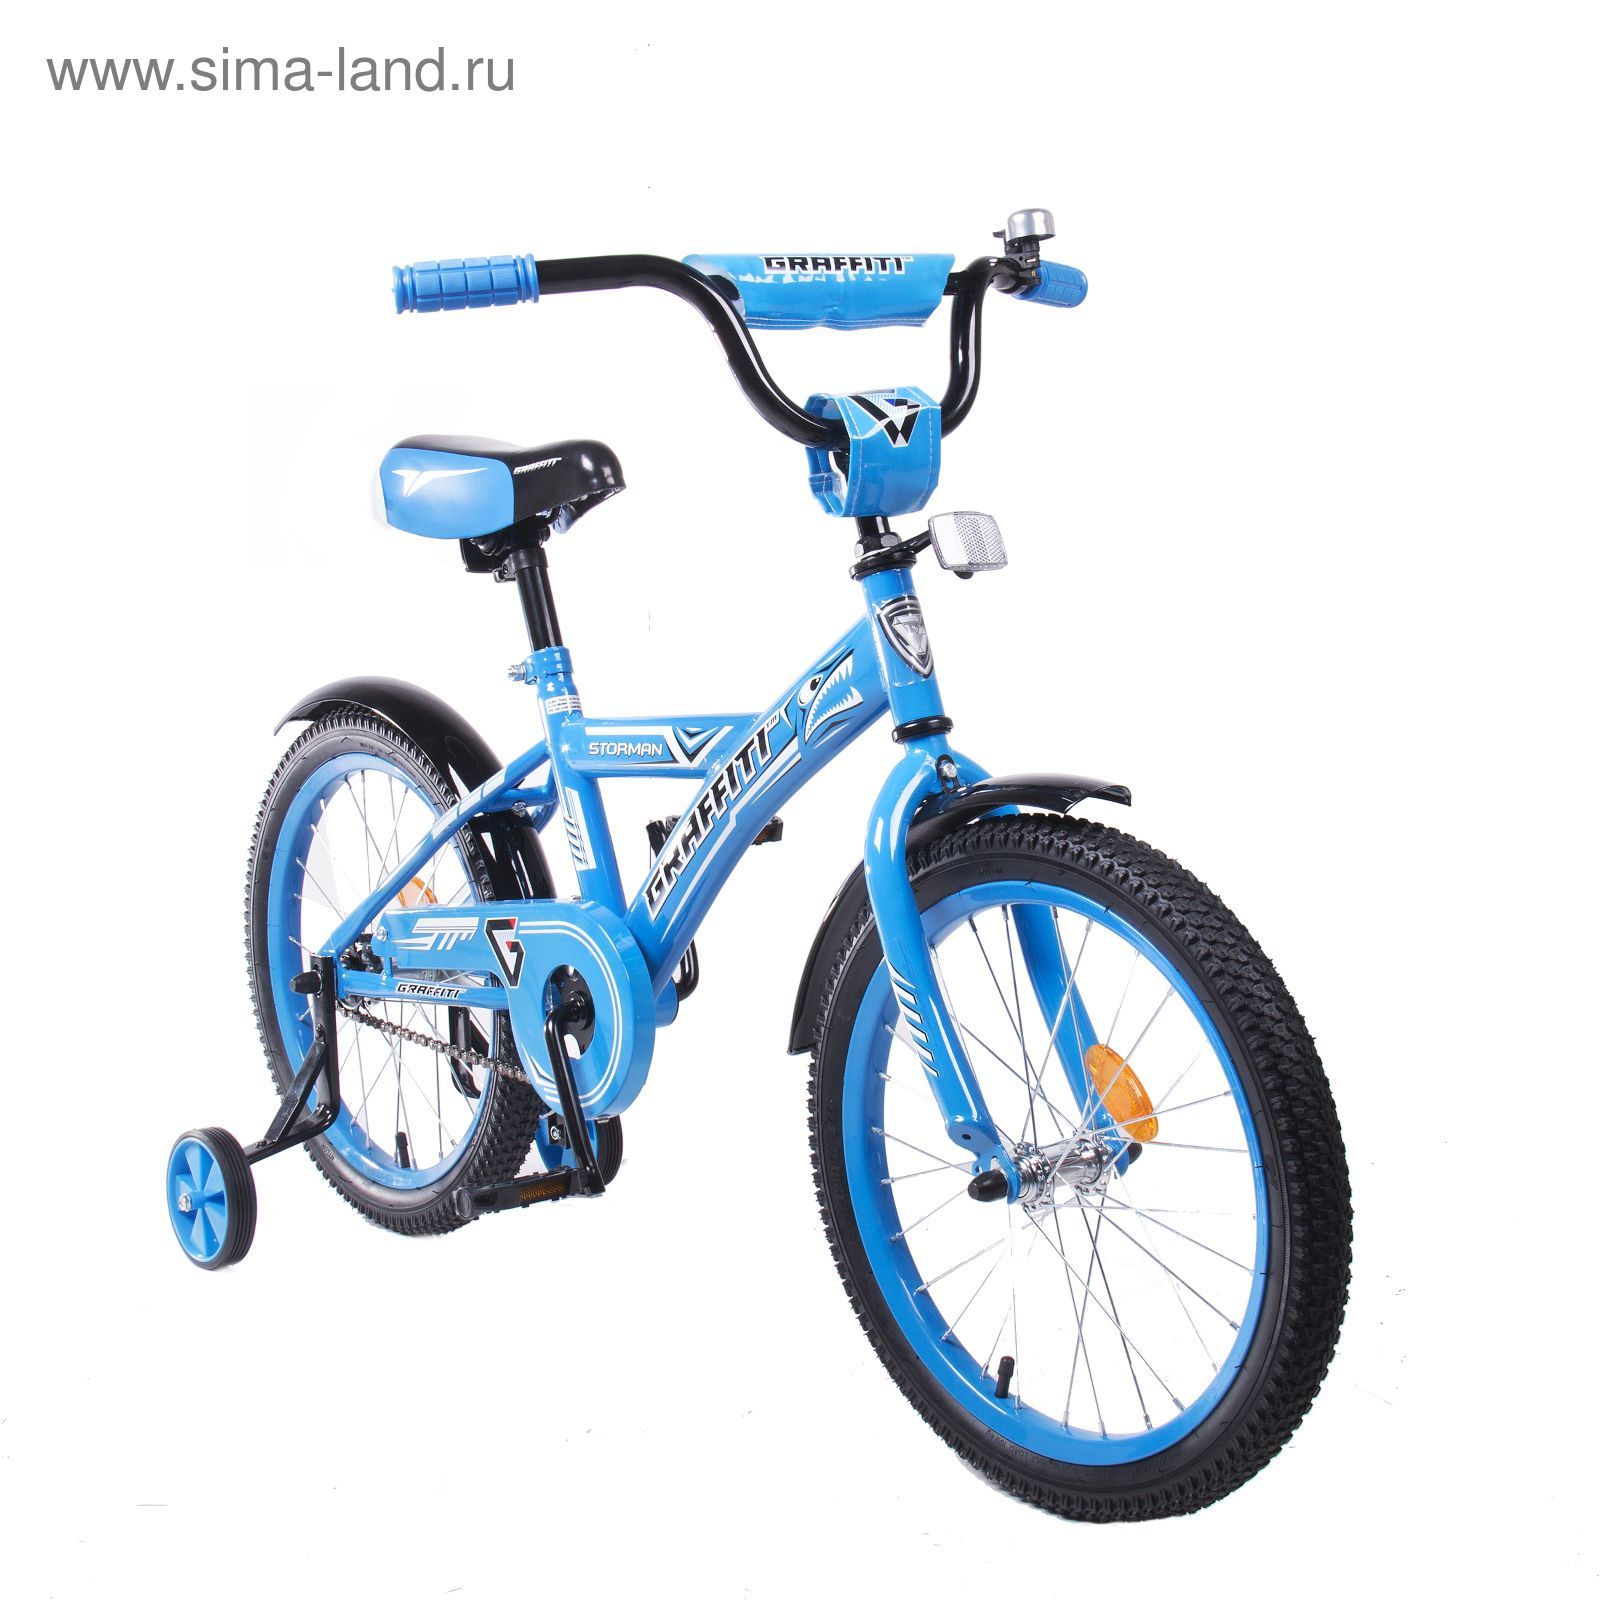 Велосипед 18" GRAFFITI Storman RUS, 2017, цвет синий